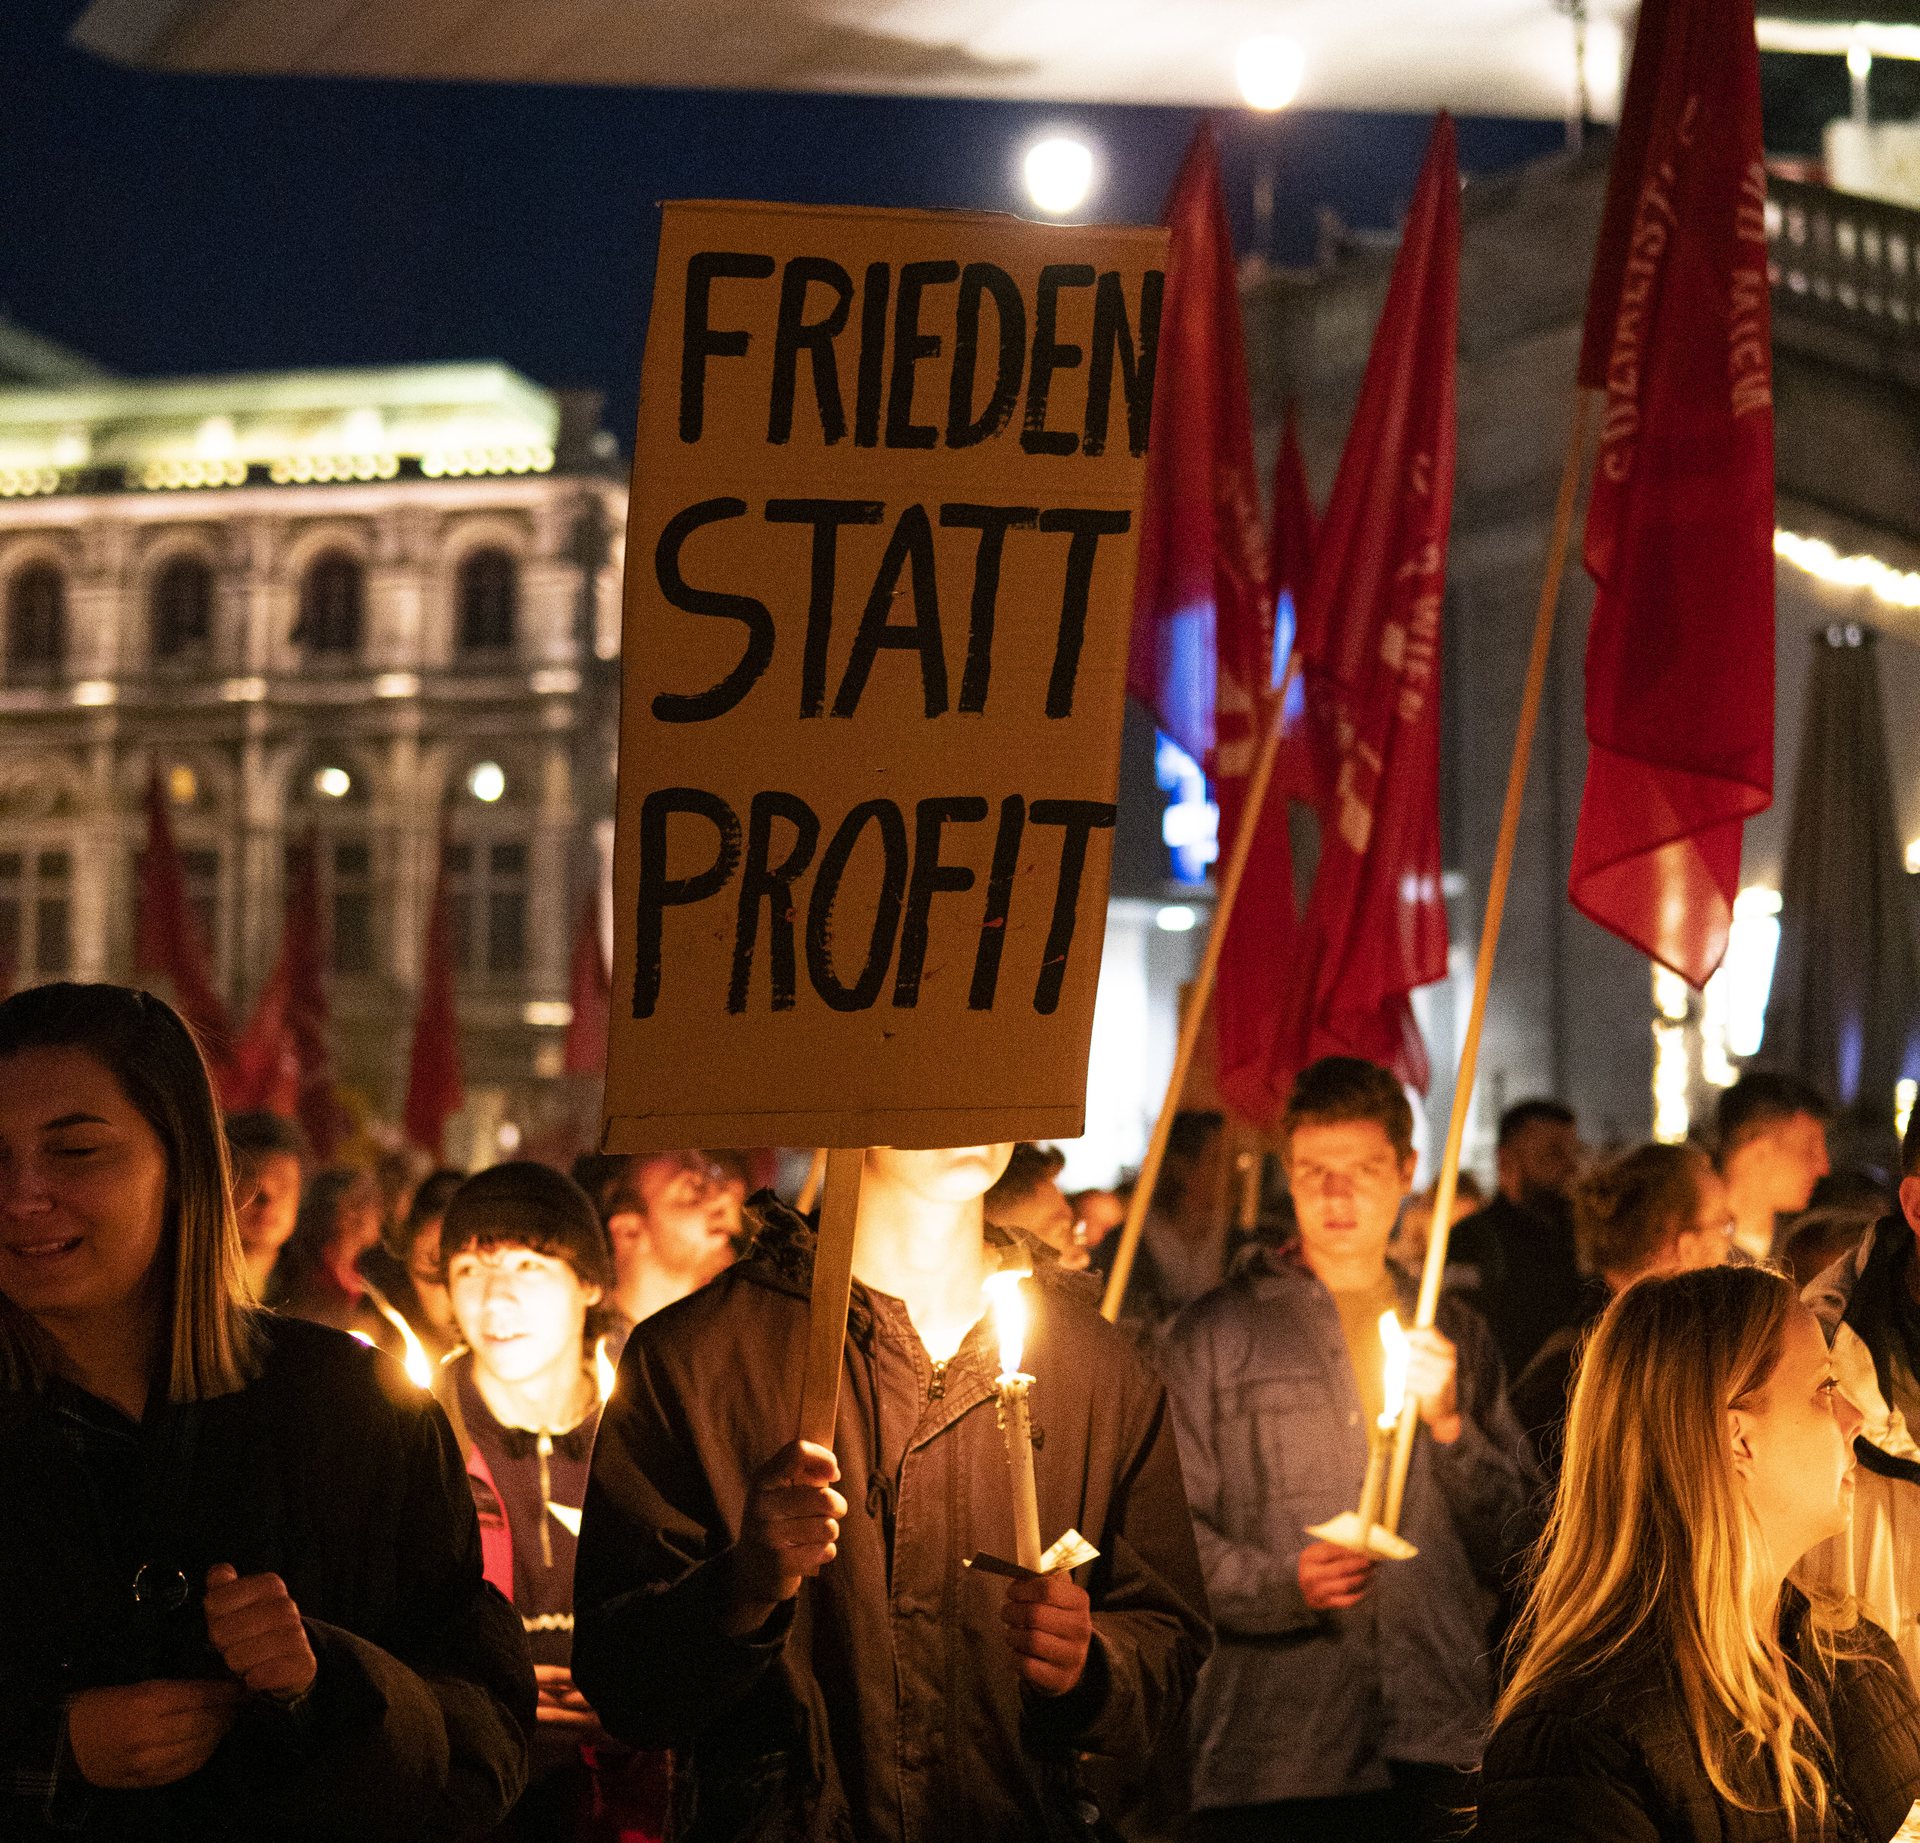 Fackelzug der SJ Wien. Fokus des Bildes liegt auf einem Schild, auf dem steht oben: Frieden statt Profite. Personen im Hintergrund halten Fackeln.